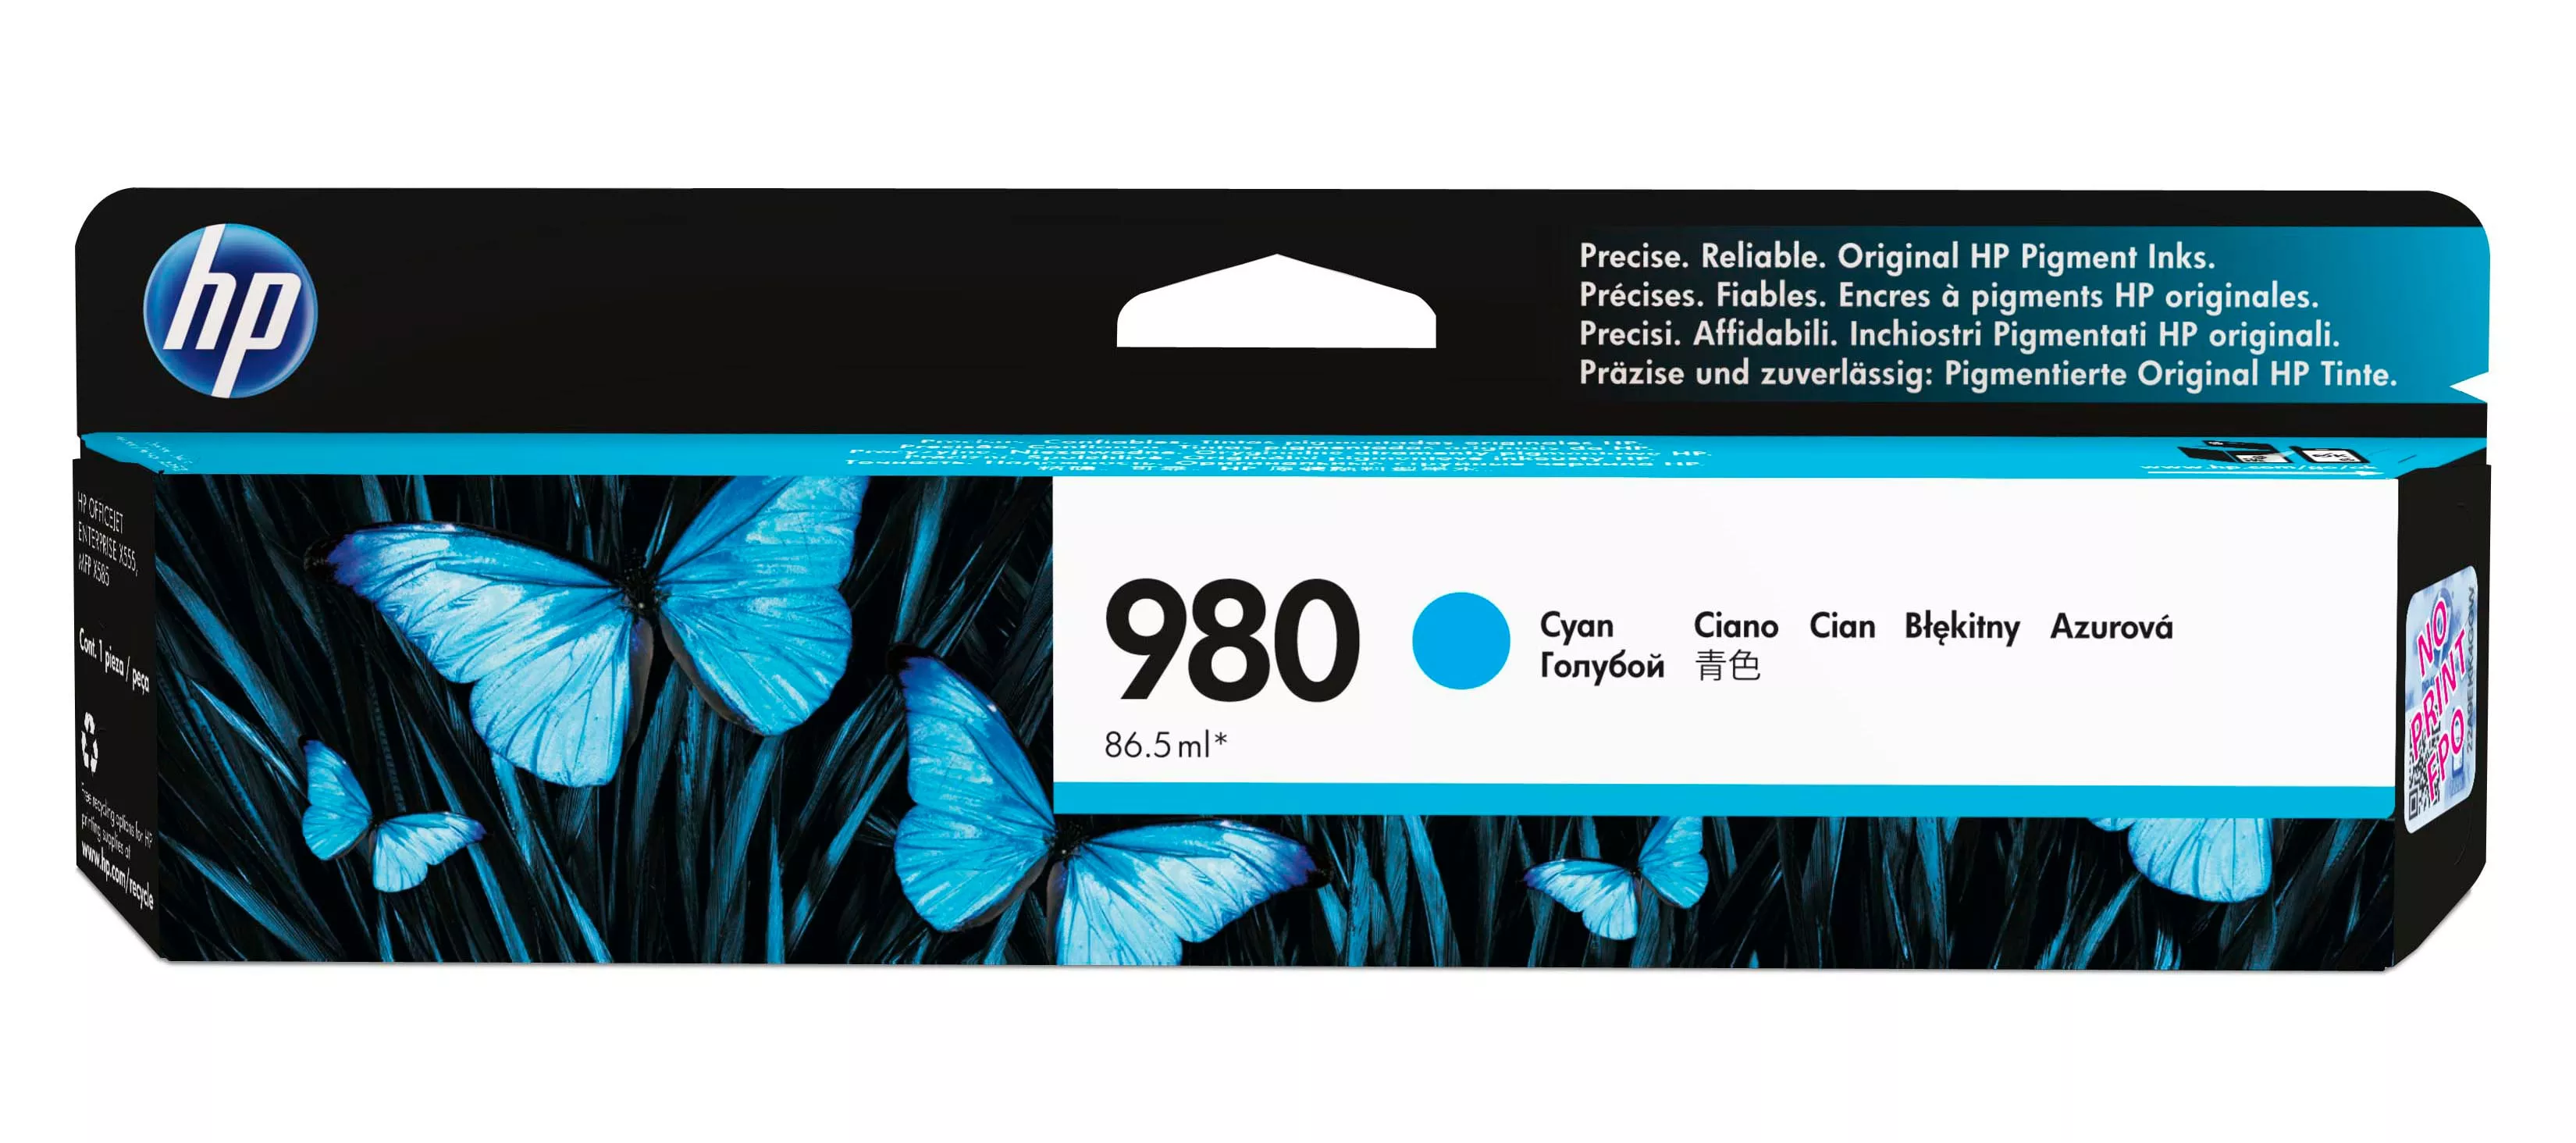 Vente HP 980A original Ink cartridge D8J07A cyan standard capacity au meilleur prix